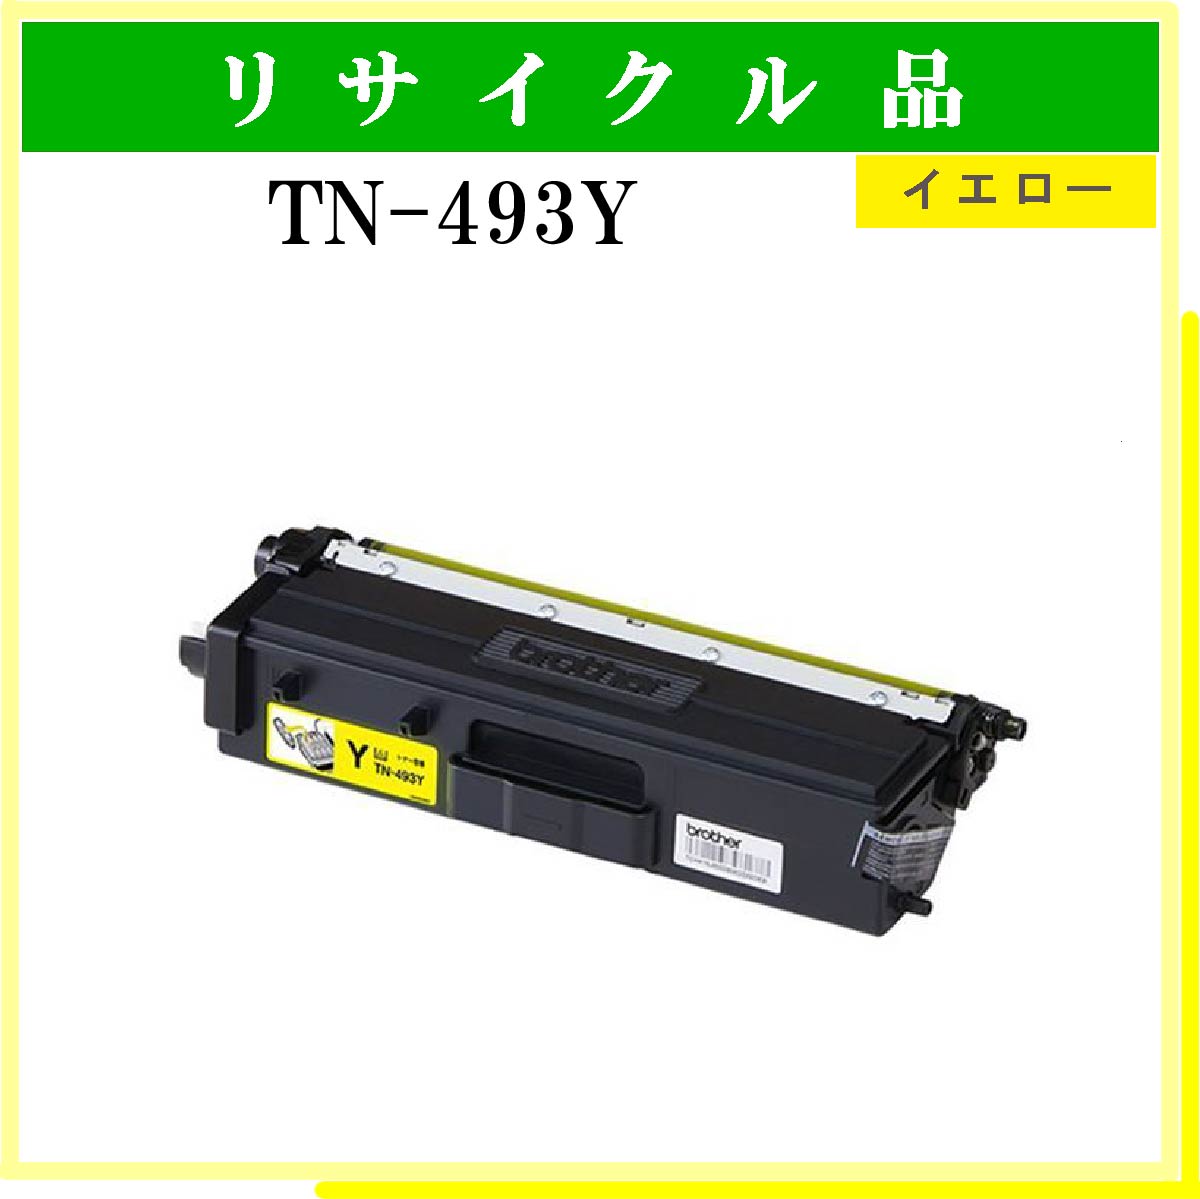 TN-493Y